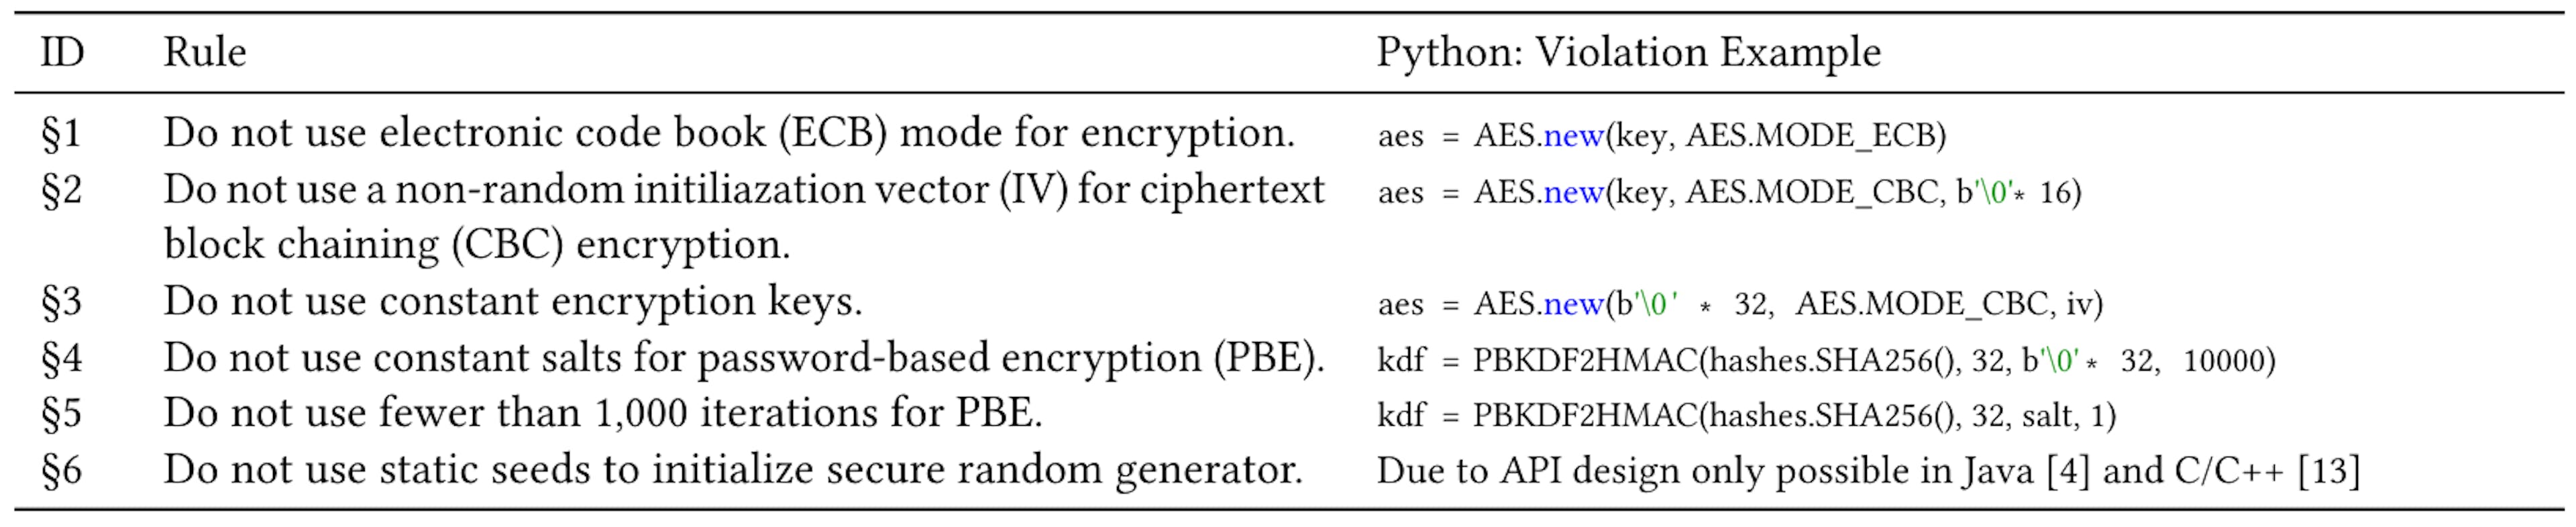 Bảng 1: Sáu trường hợp lạm dụng tiền điện tử thường được thảo luận trong Java và C [4, 13] với một ví dụ về vi phạm trong Python.